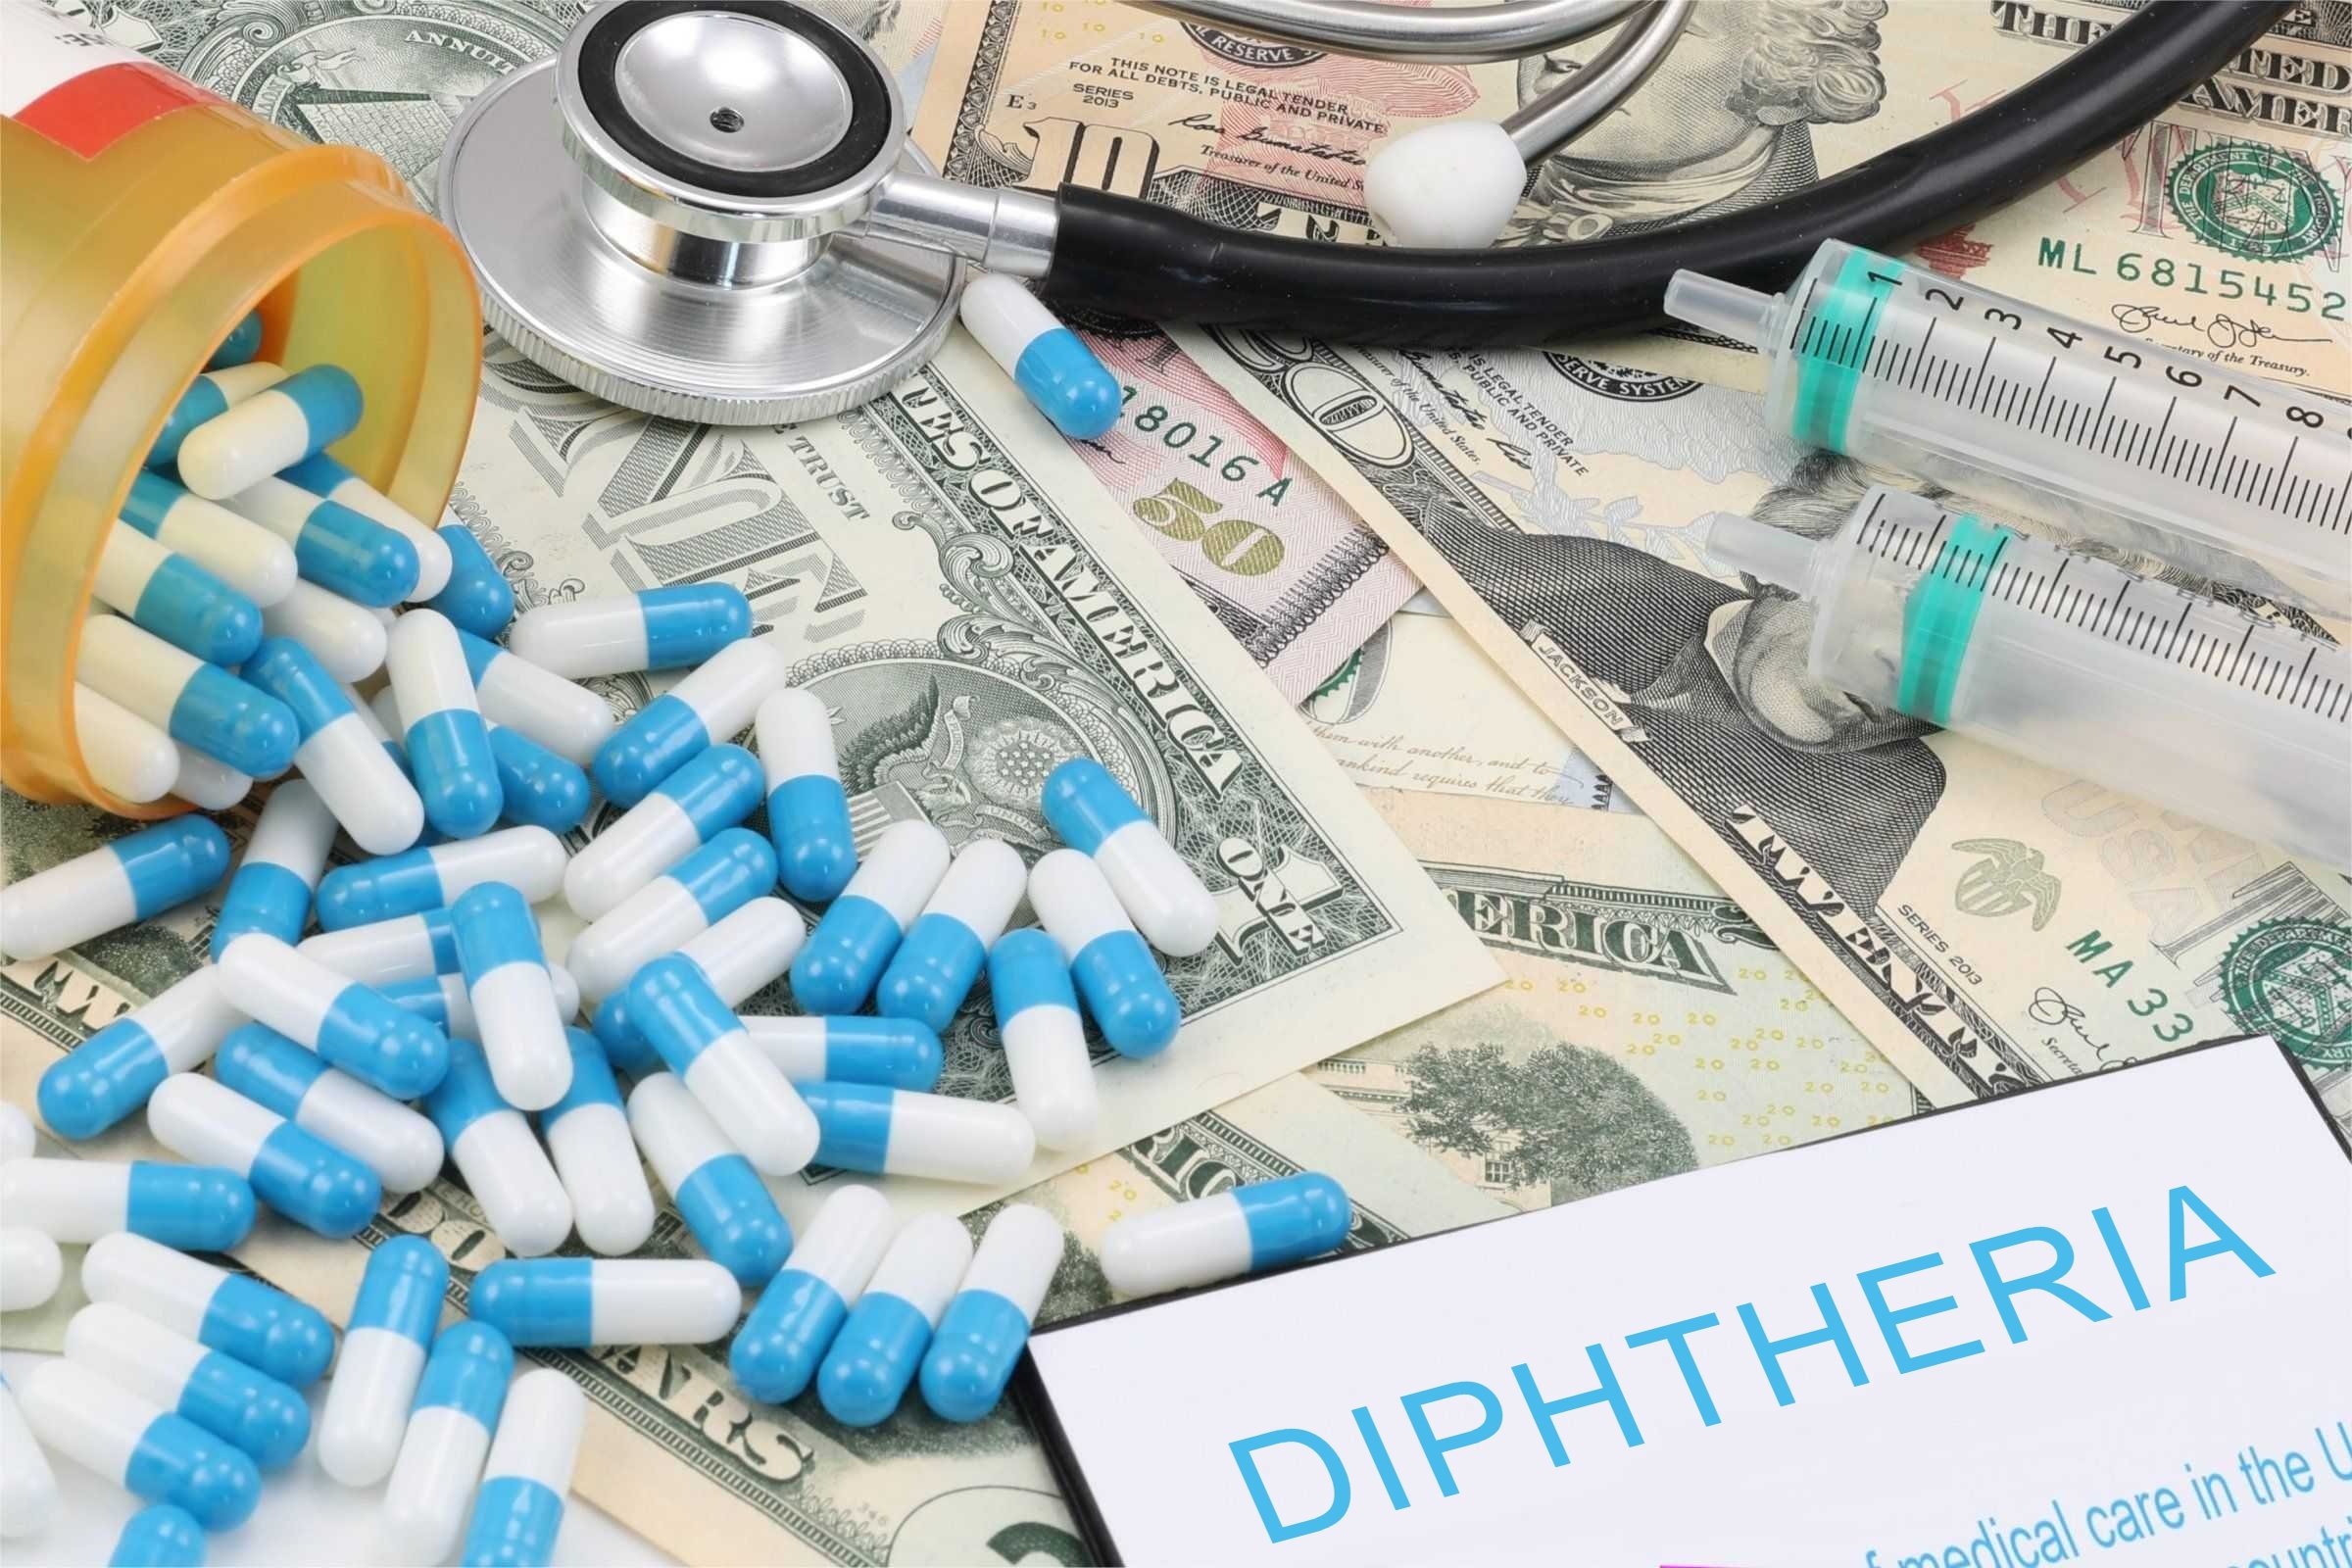 diphtheria